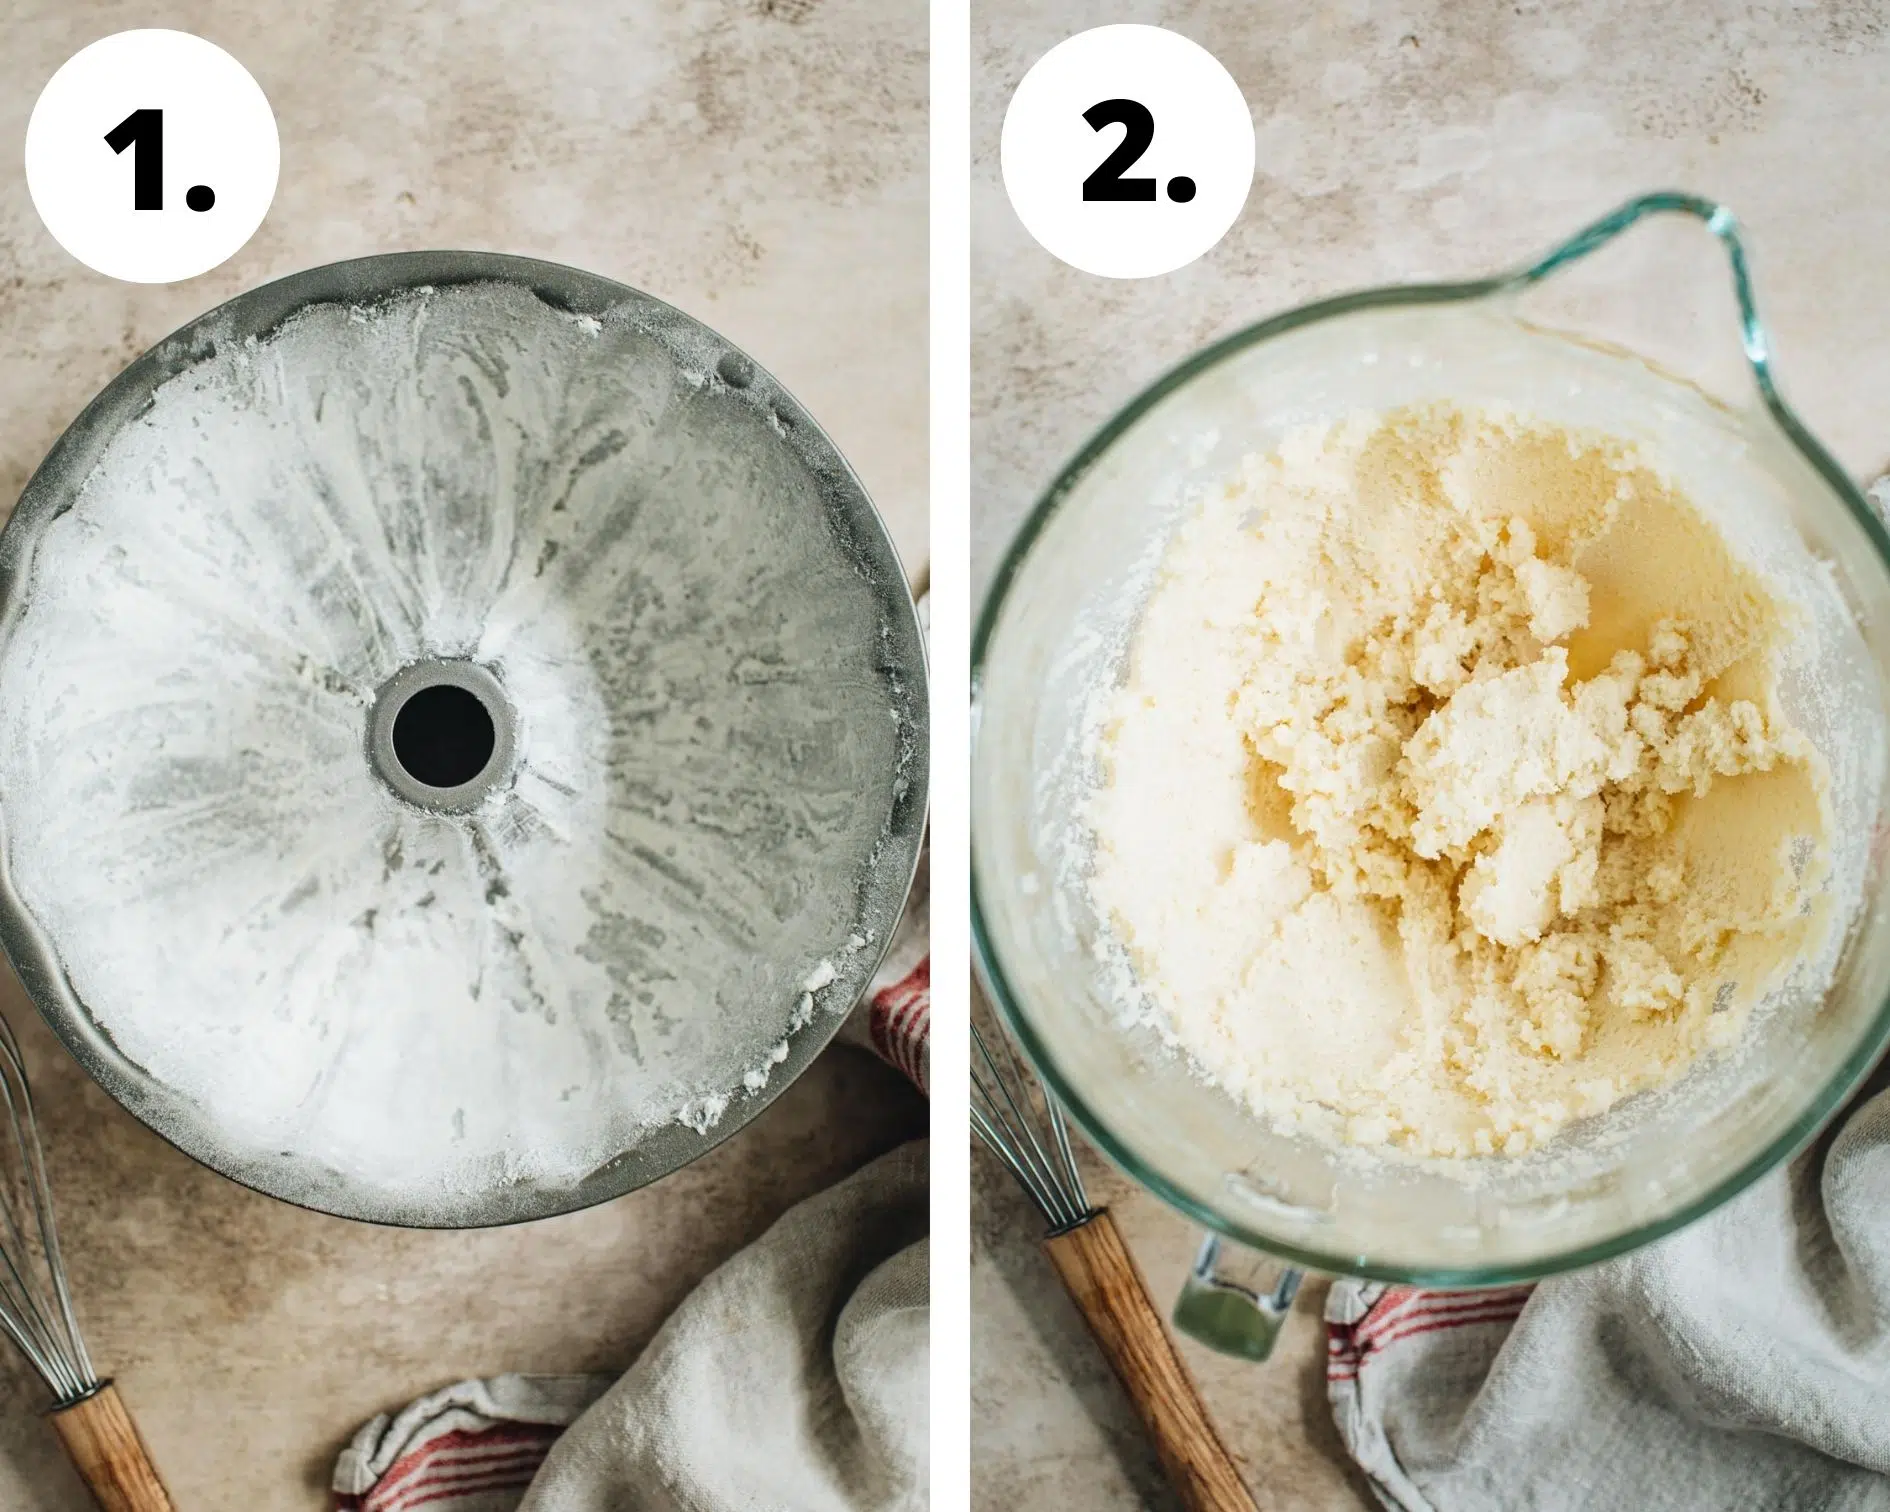 Sour cream pound cake process steps 1 and 2.